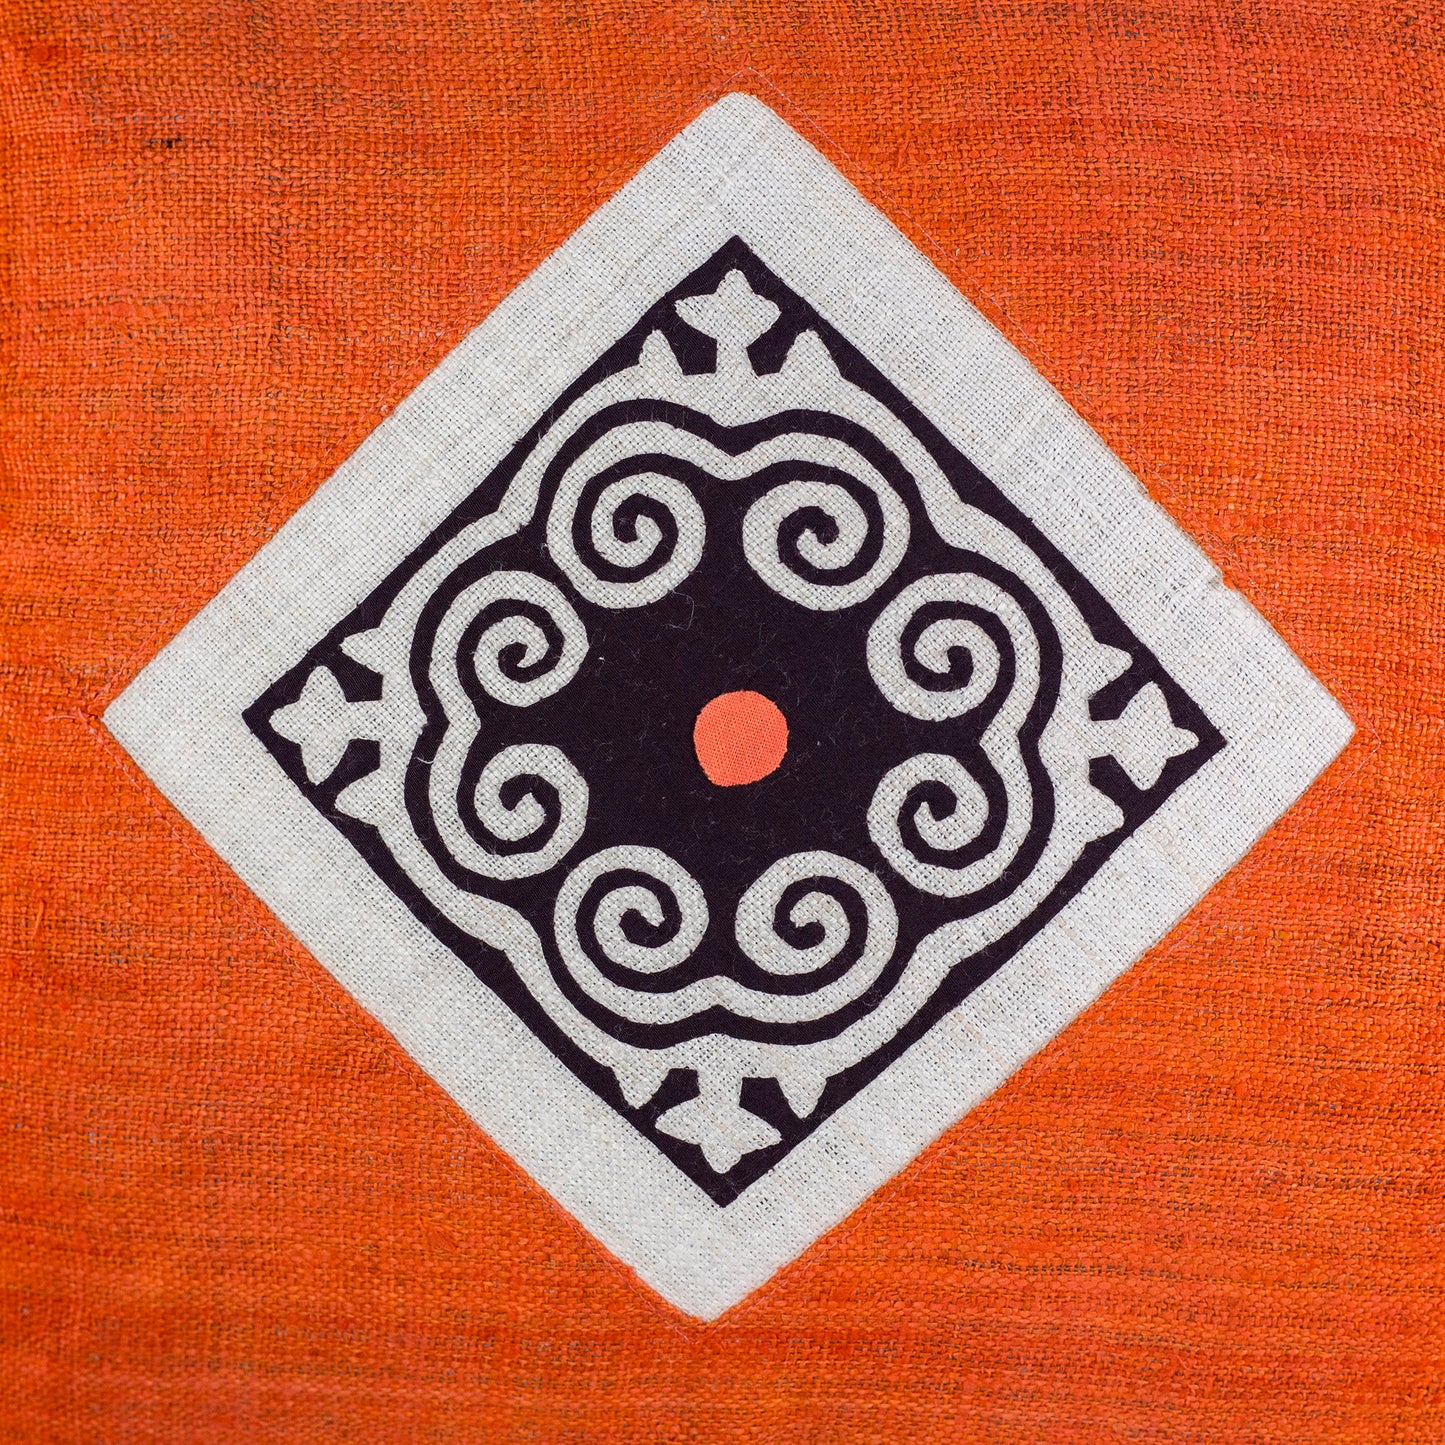 Hemp Cushion Cover - H'mong pattern, orange hemp at center